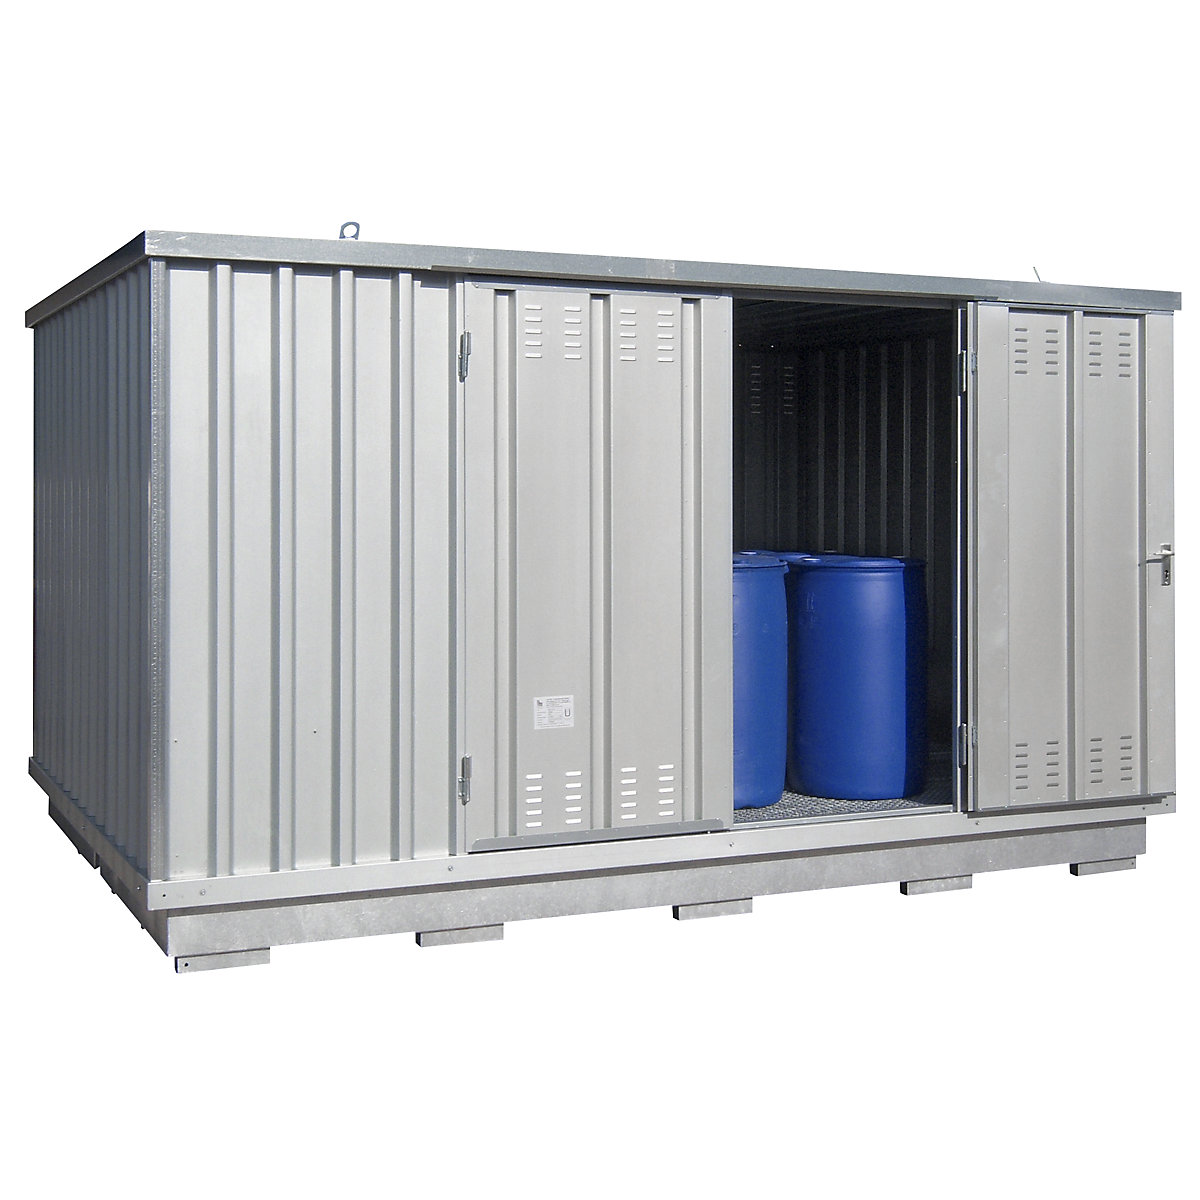 Kontejner za skladištenje opasnih materijala koji ugrožavaju vode – LaCont